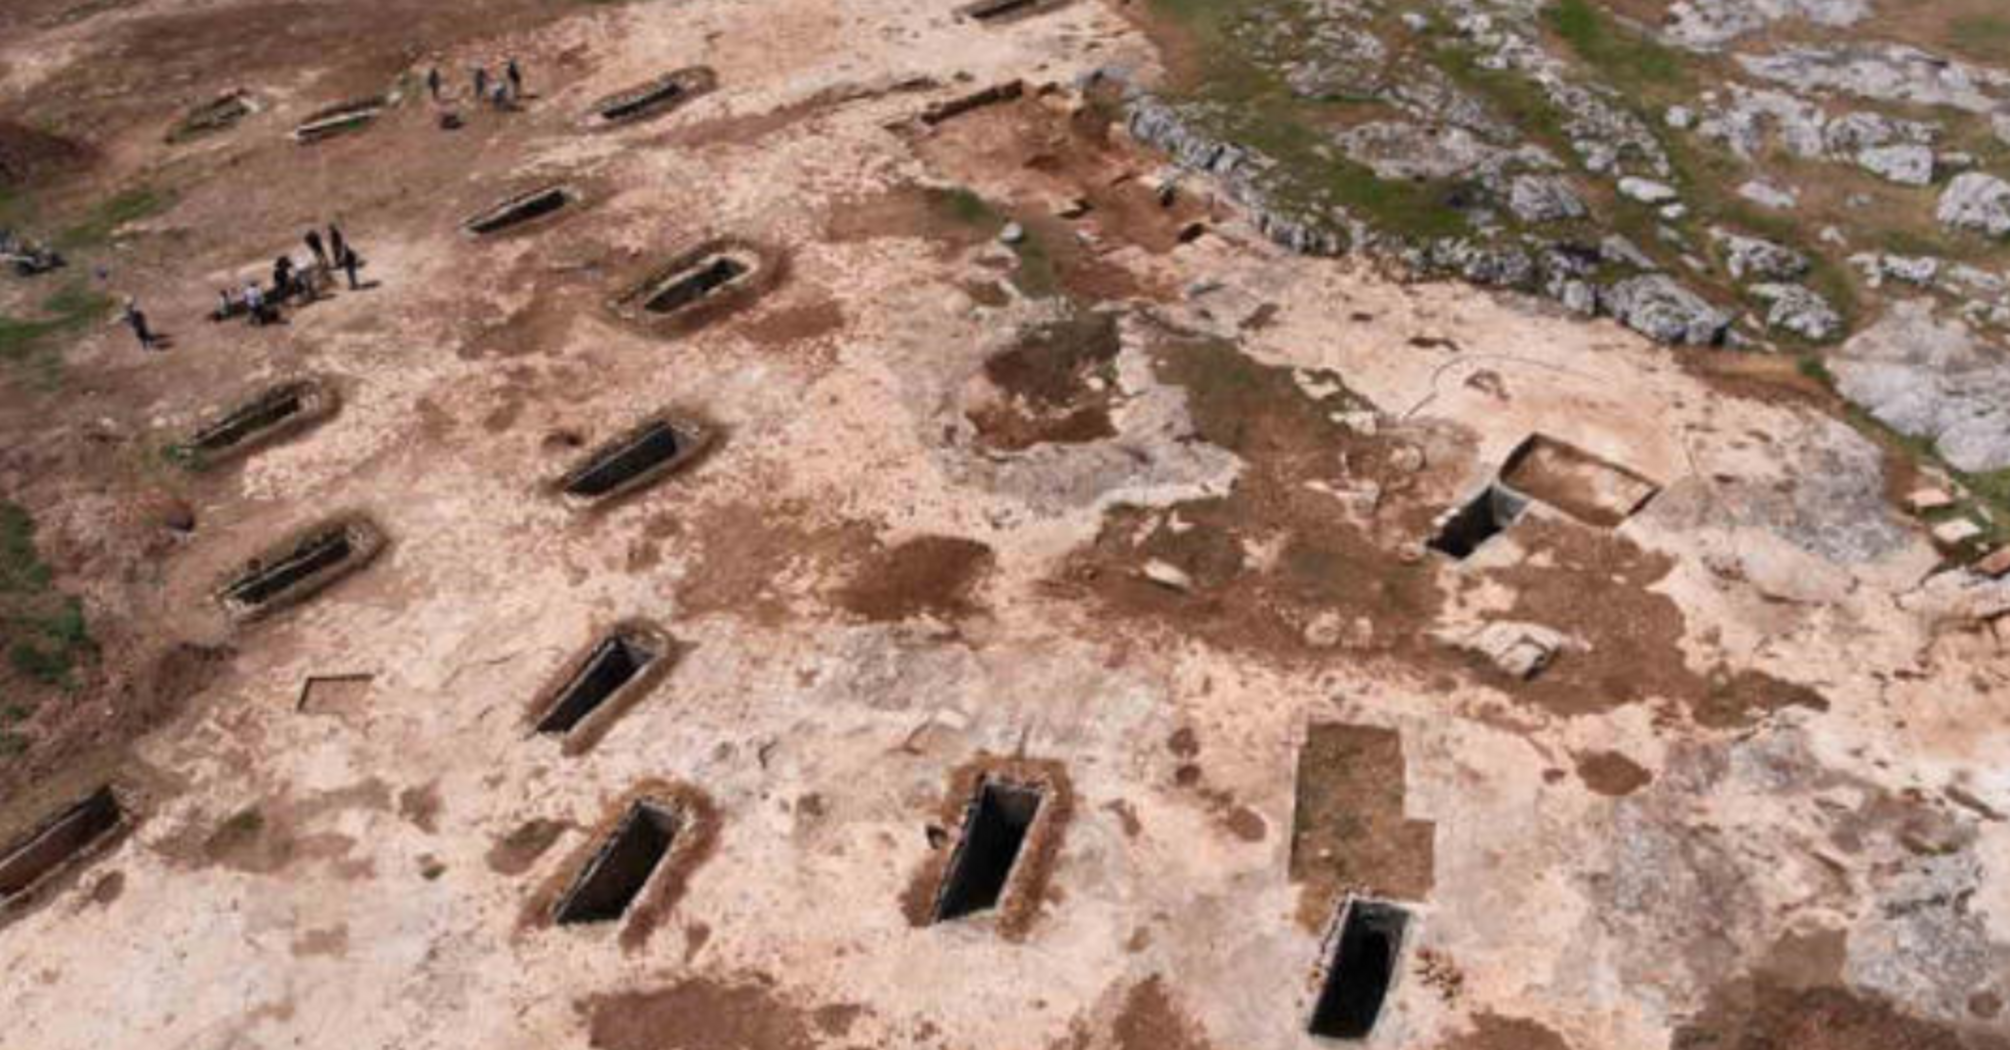 В Турции нашли 2000-летнюю гробницу, охраняемую головами быков (фото)